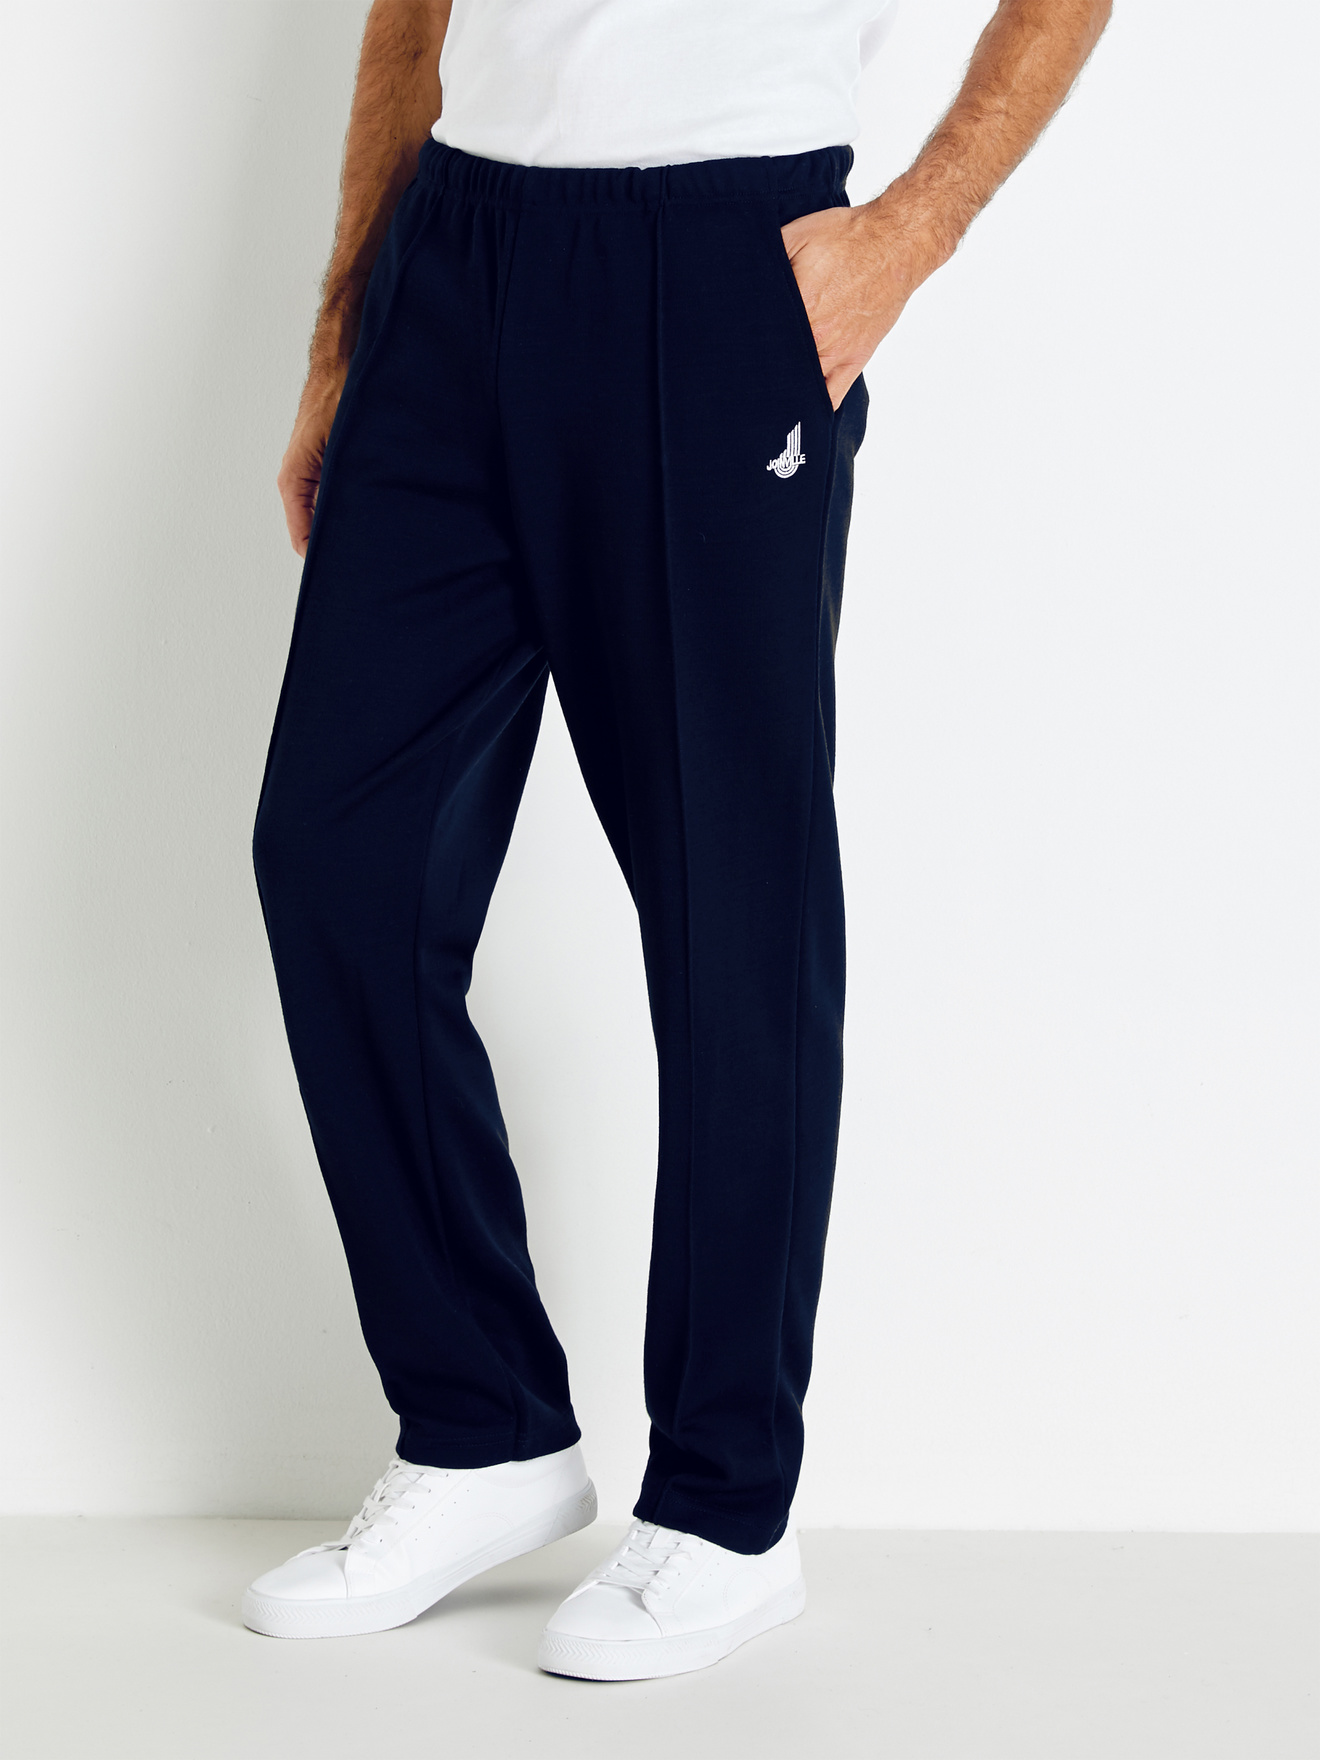 JustSun Jogging Homme Survetement Pantalons de Sport Coton Training  Sportswear